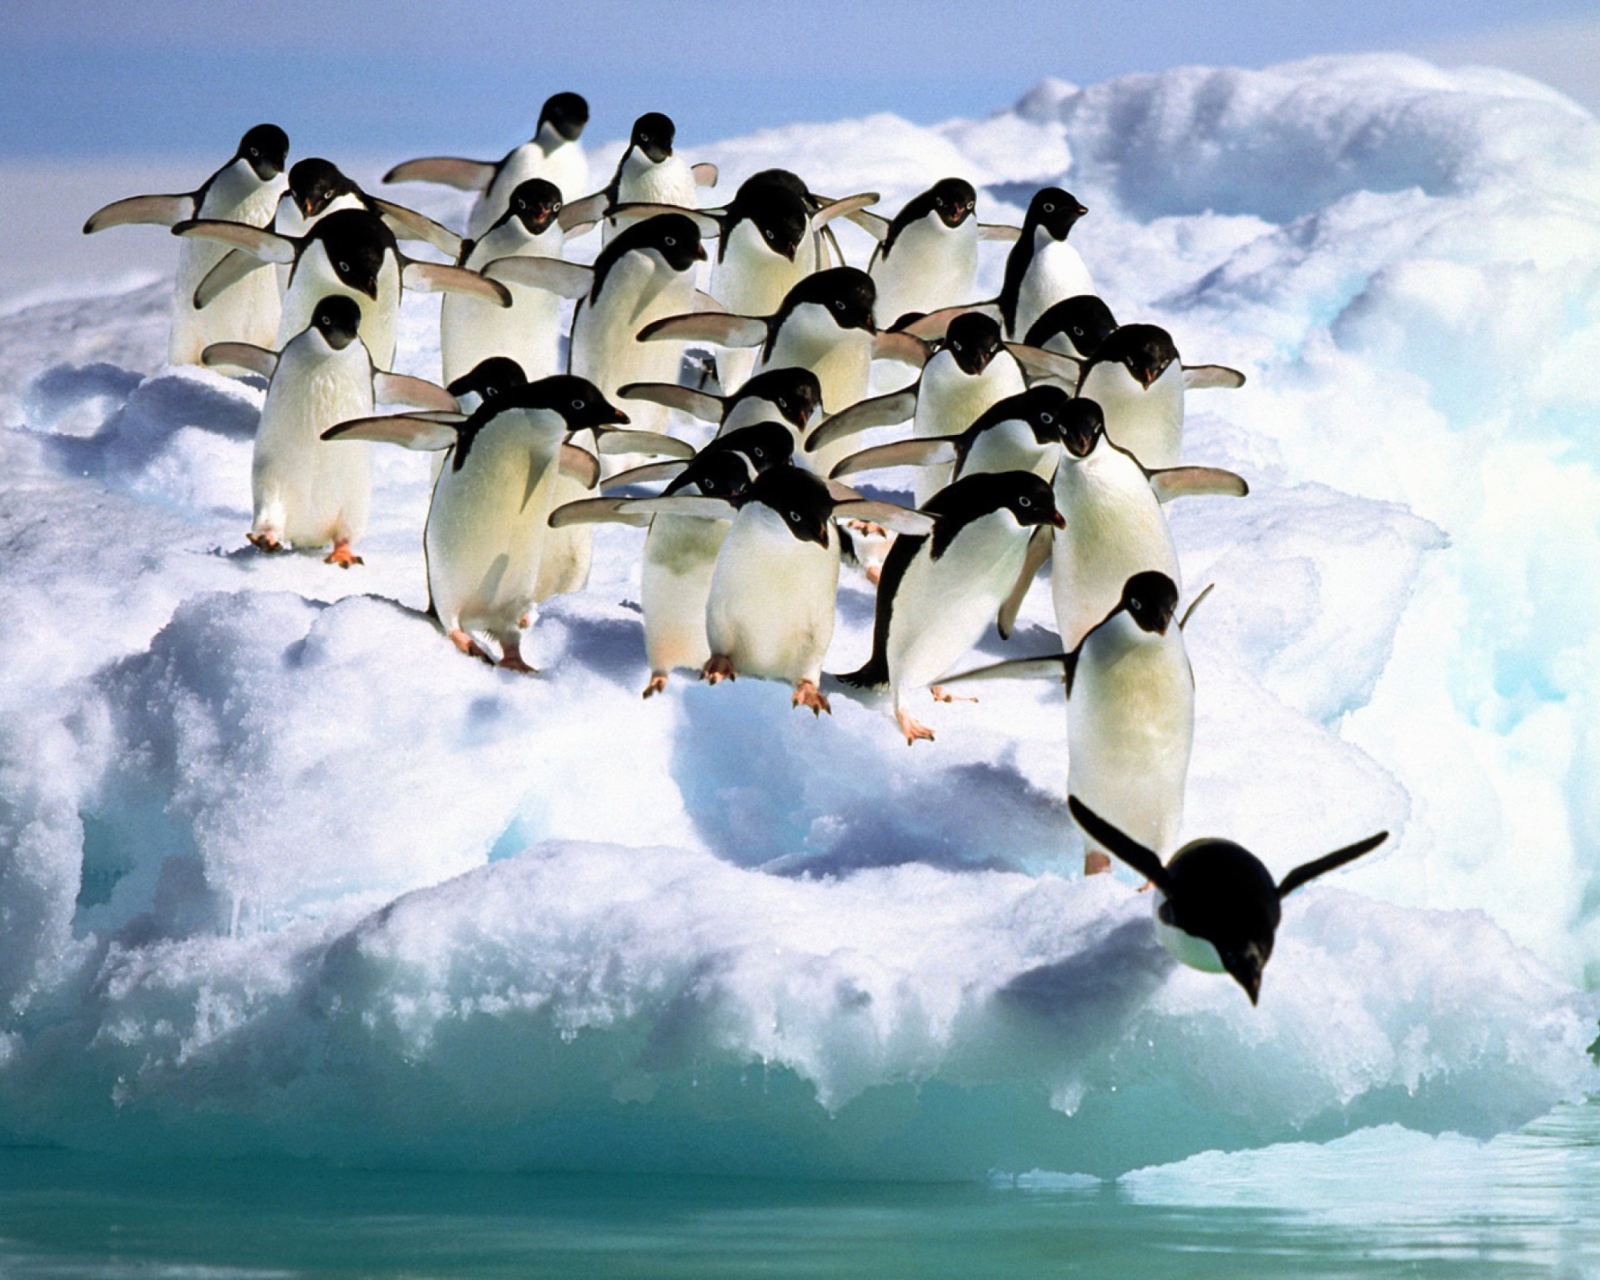 Penguins On An Iceberg wallpaper 1600x1280